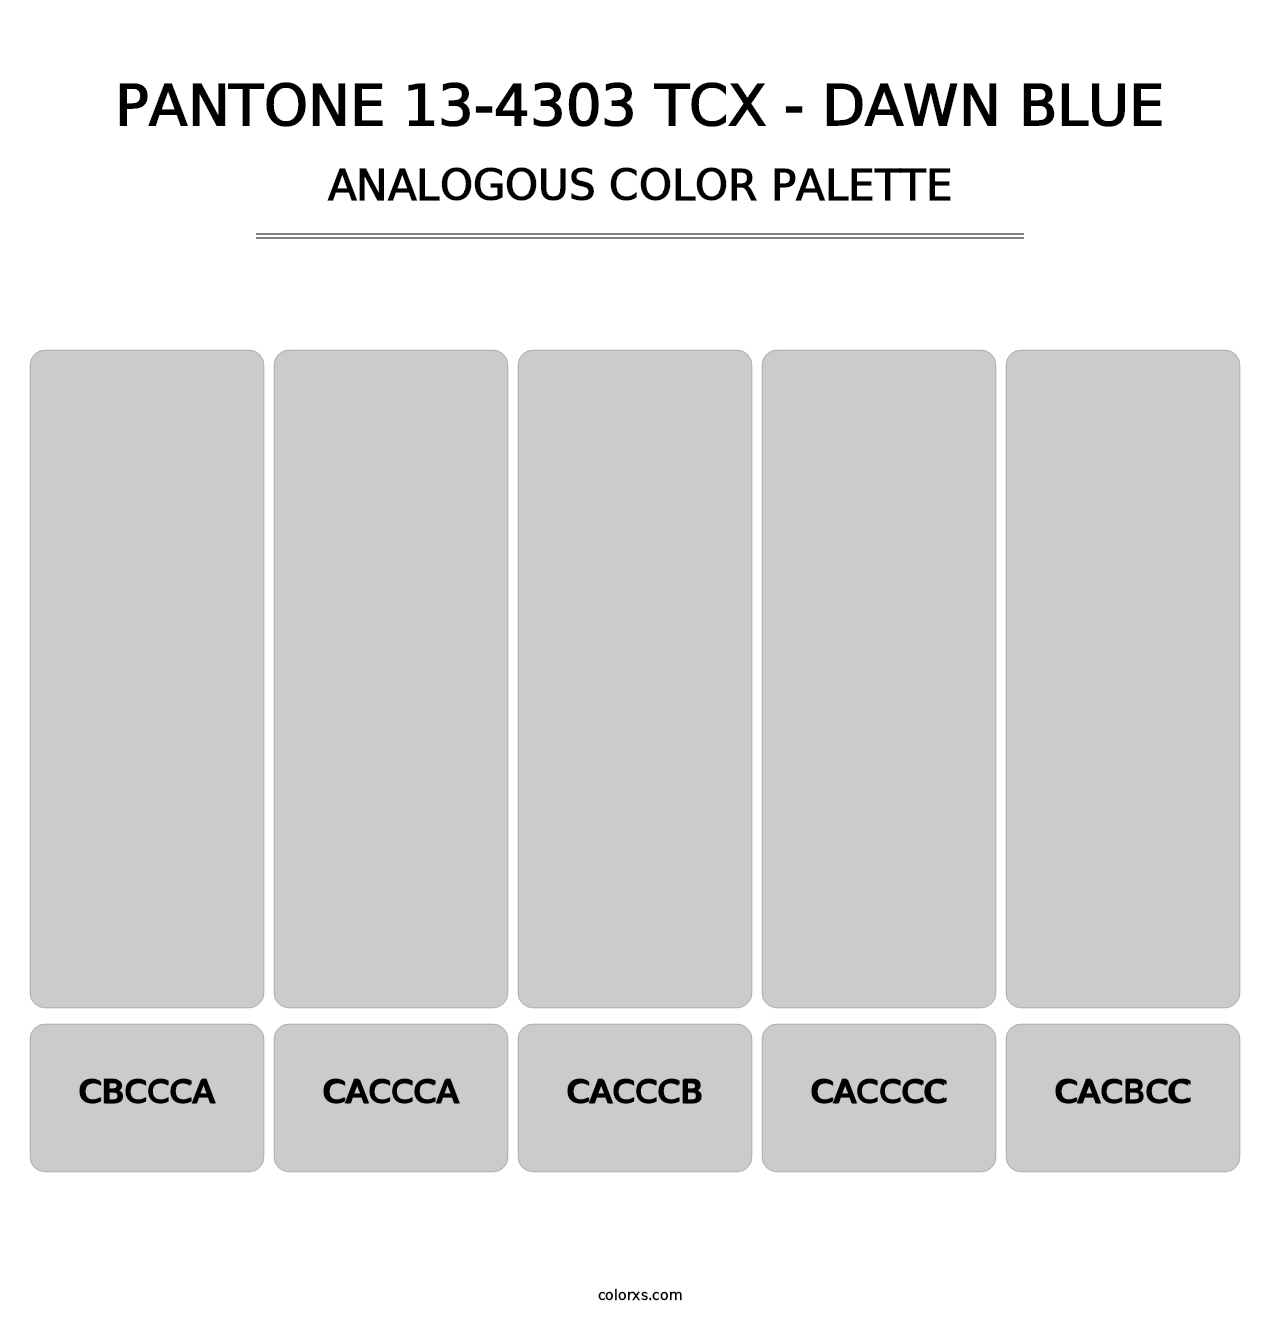 PANTONE 13-4303 TCX - Dawn Blue - Analogous Color Palette